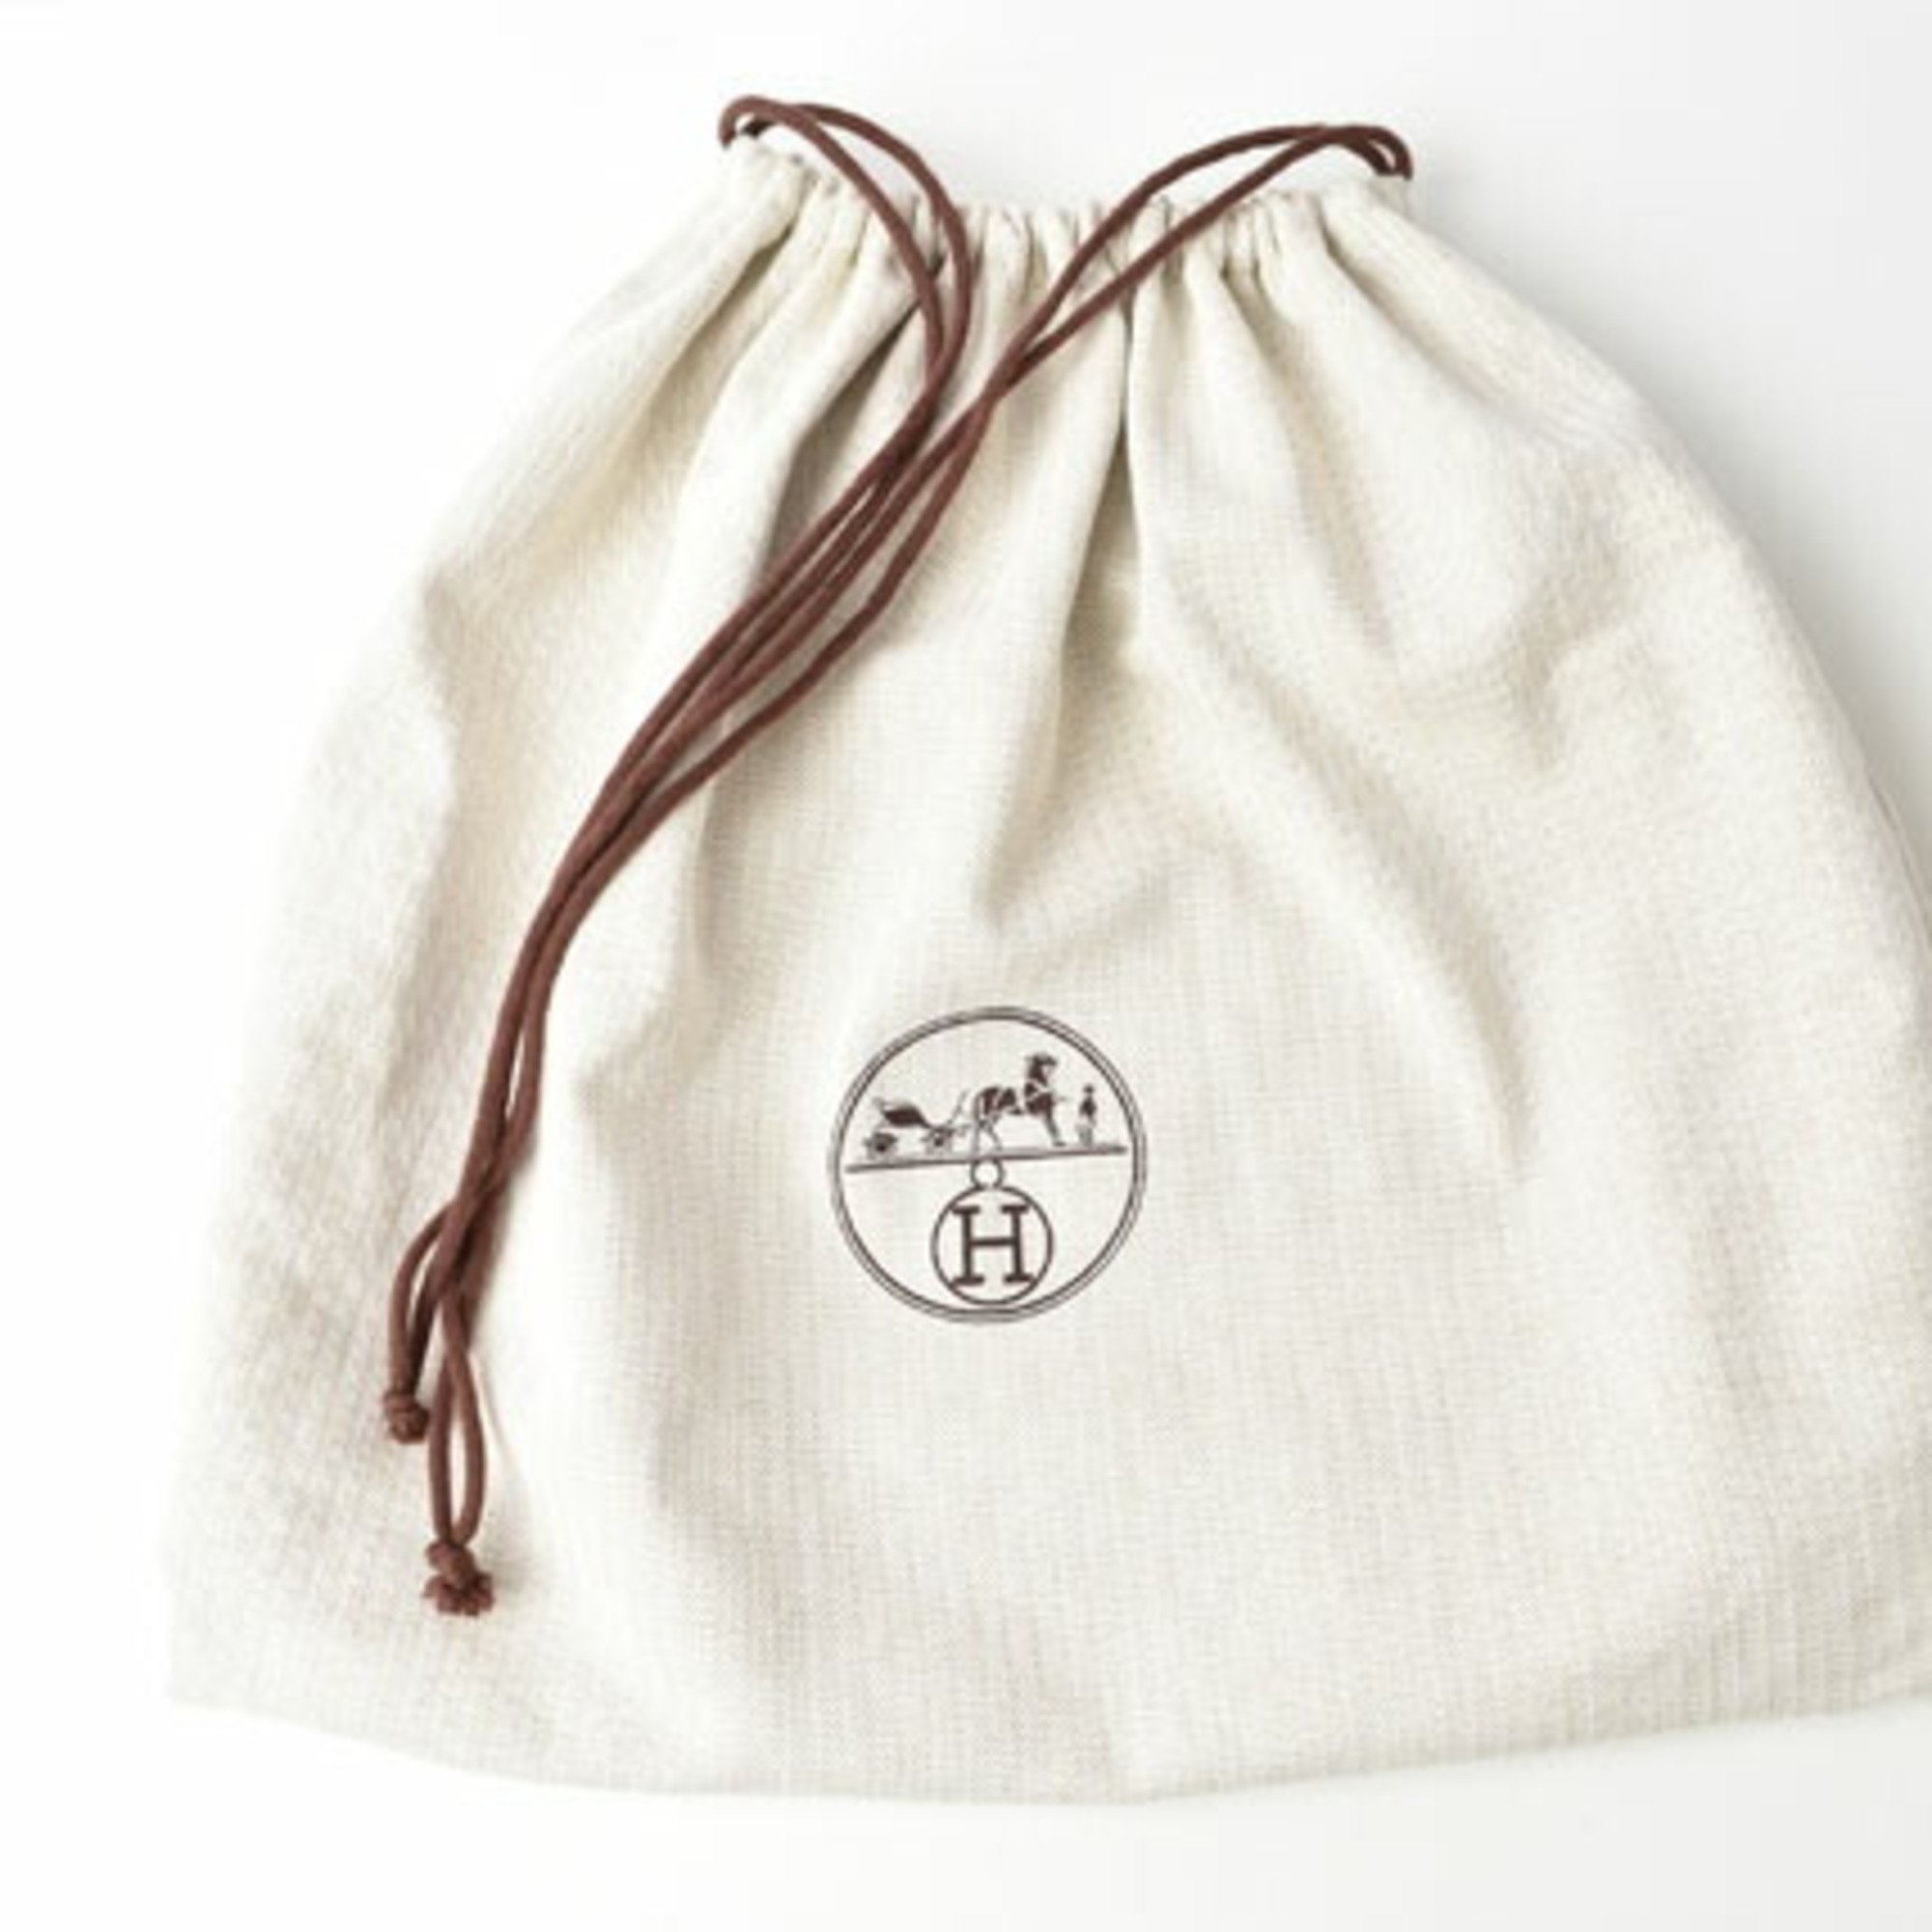 Hermes Bags/Tote Bags HERMES Garden TPM/30cm Women's Bag Twill Ash Black